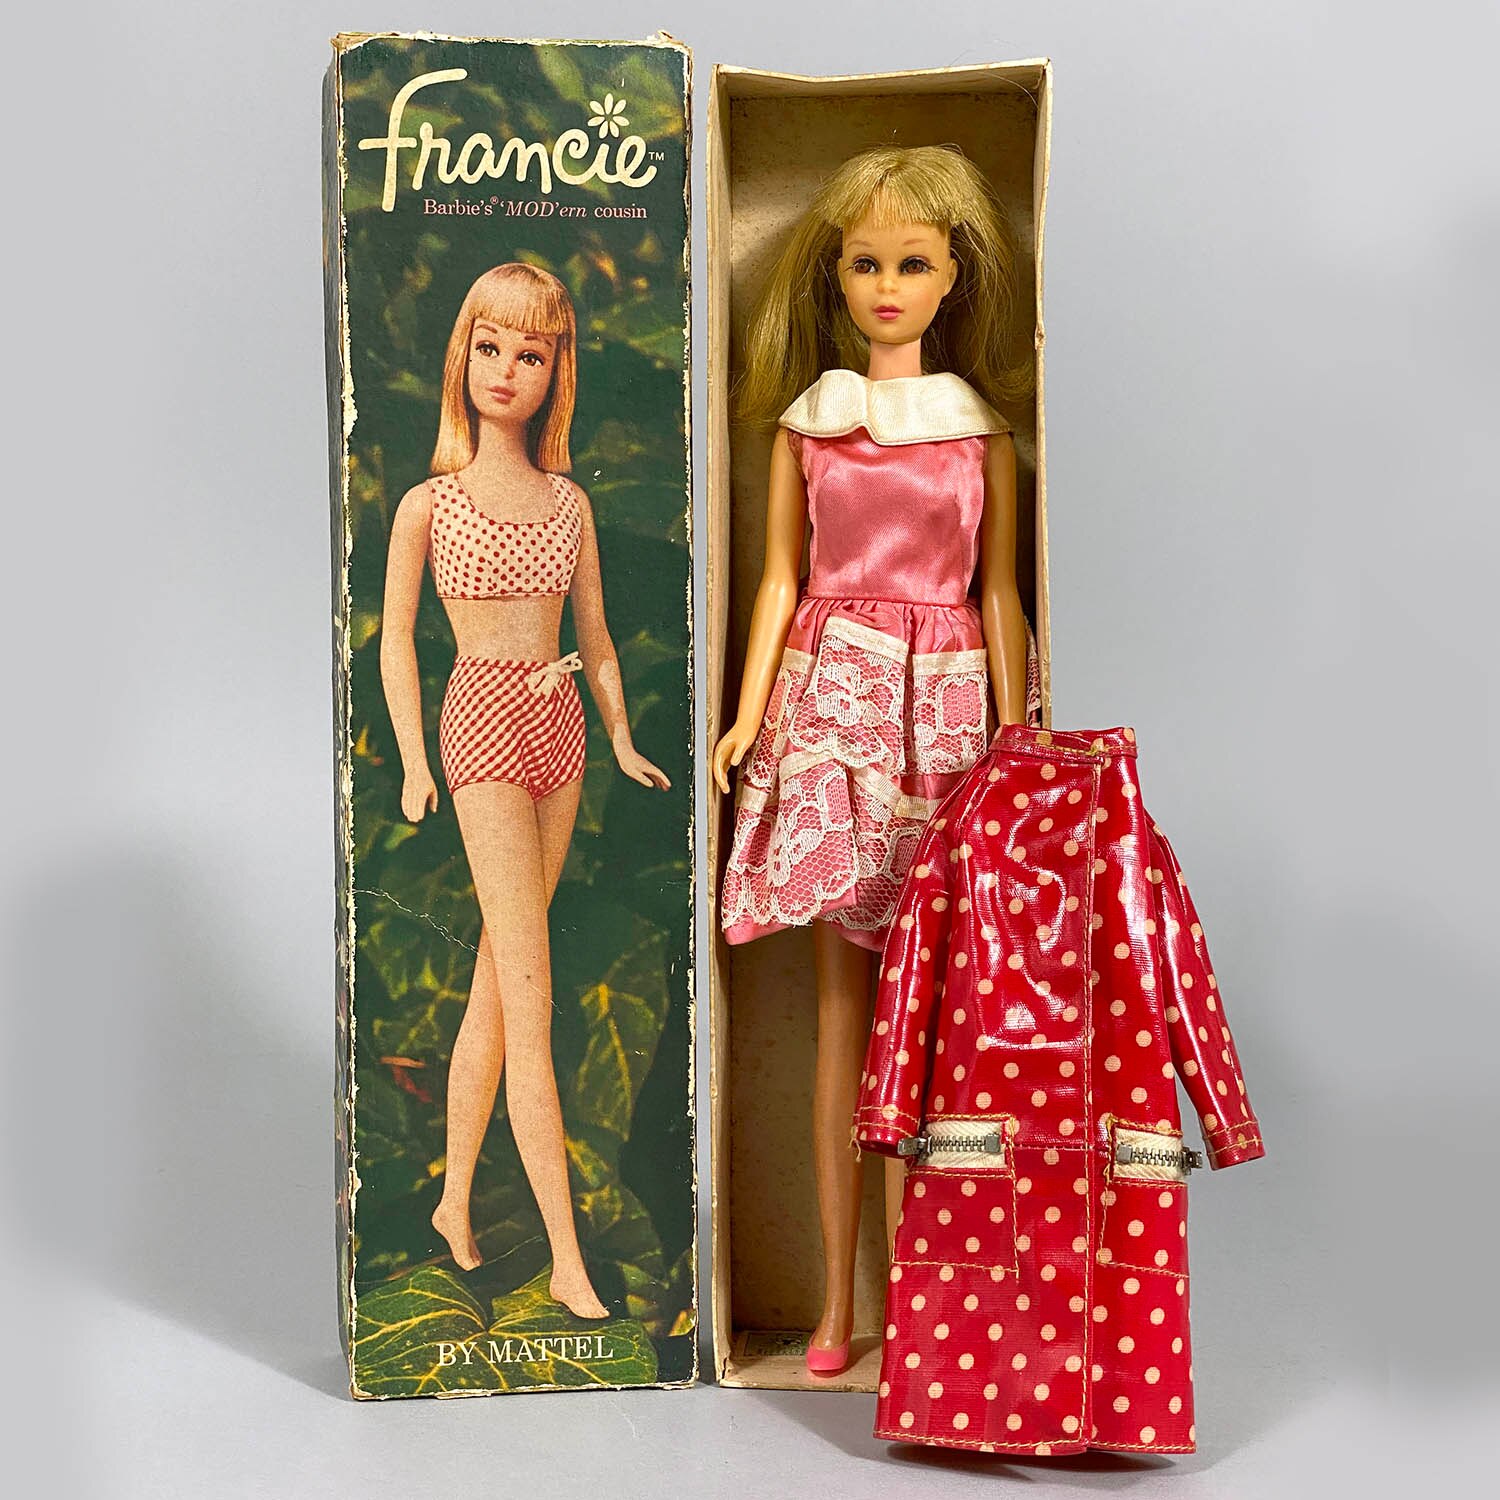 ヴィンテージバービー人形 フランシー人形 ワイルドフラワー 1971年